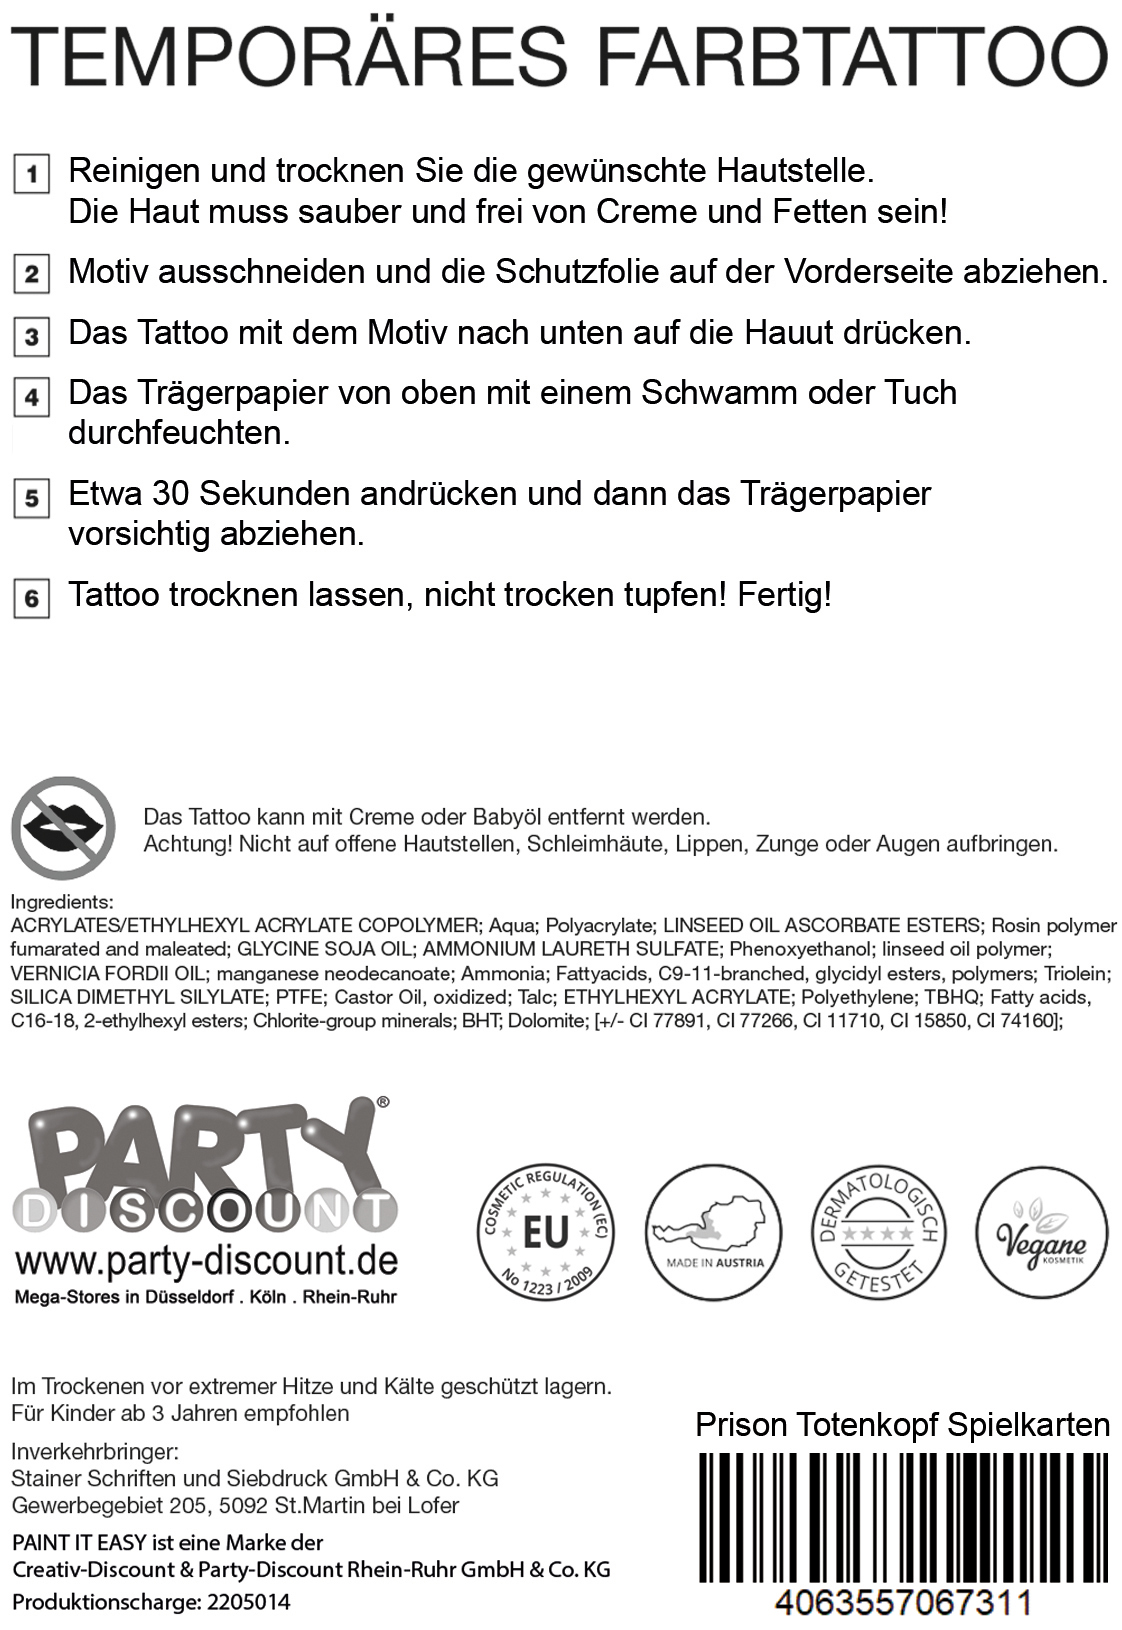 NEU Temporres Tattoo-Motiv Reality, 10,5 x 14,8cm, Prison Totenkopf mit Spielkarten Bild 3